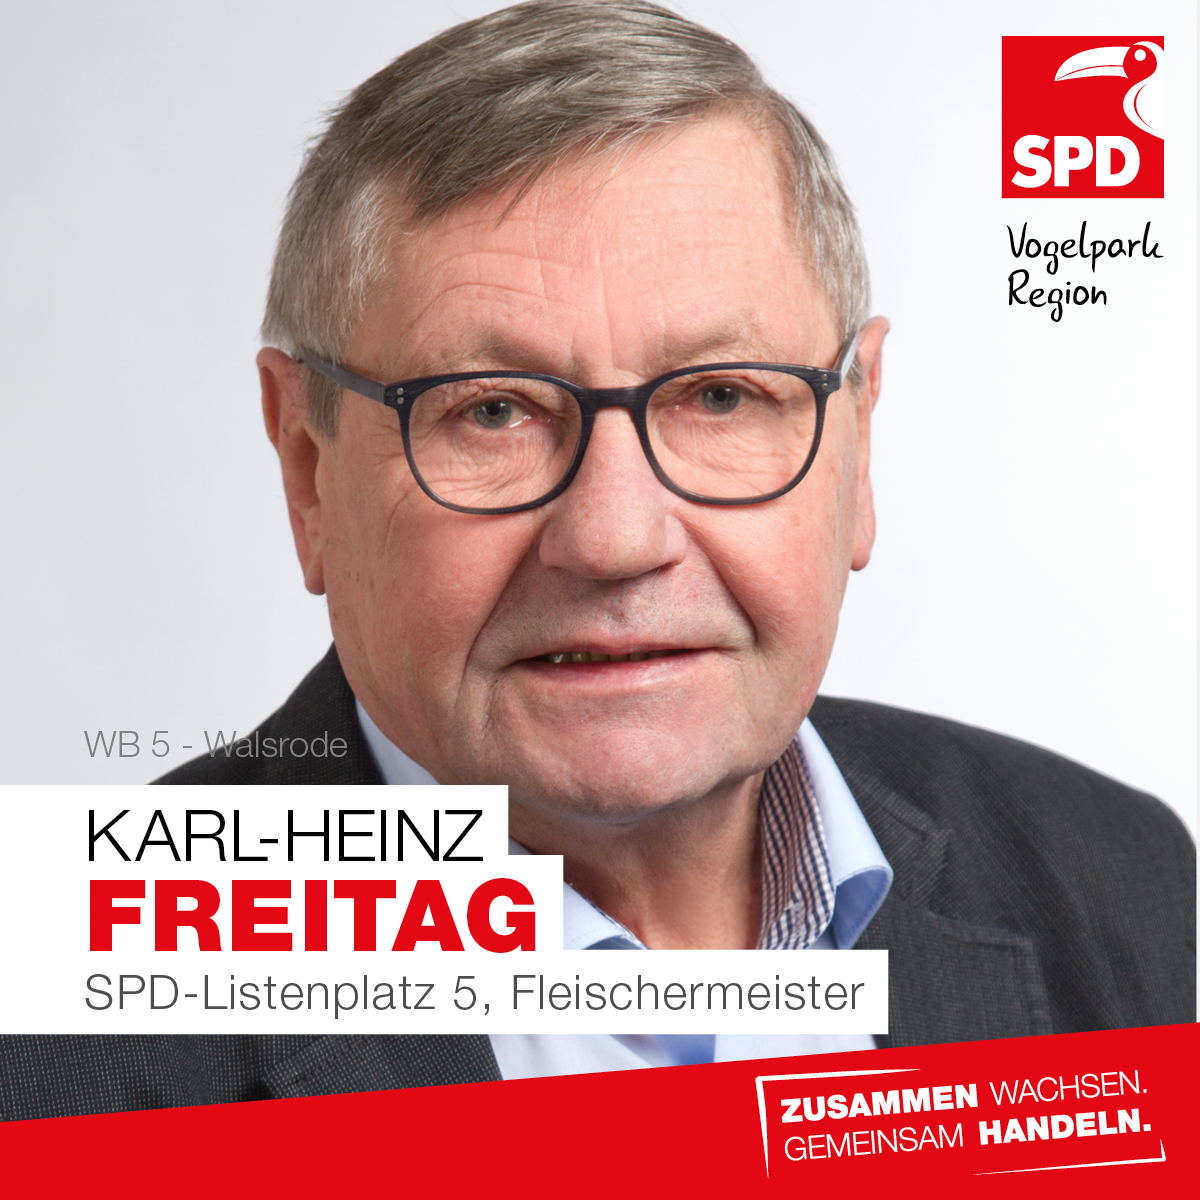 Karl-Heinz Freitag